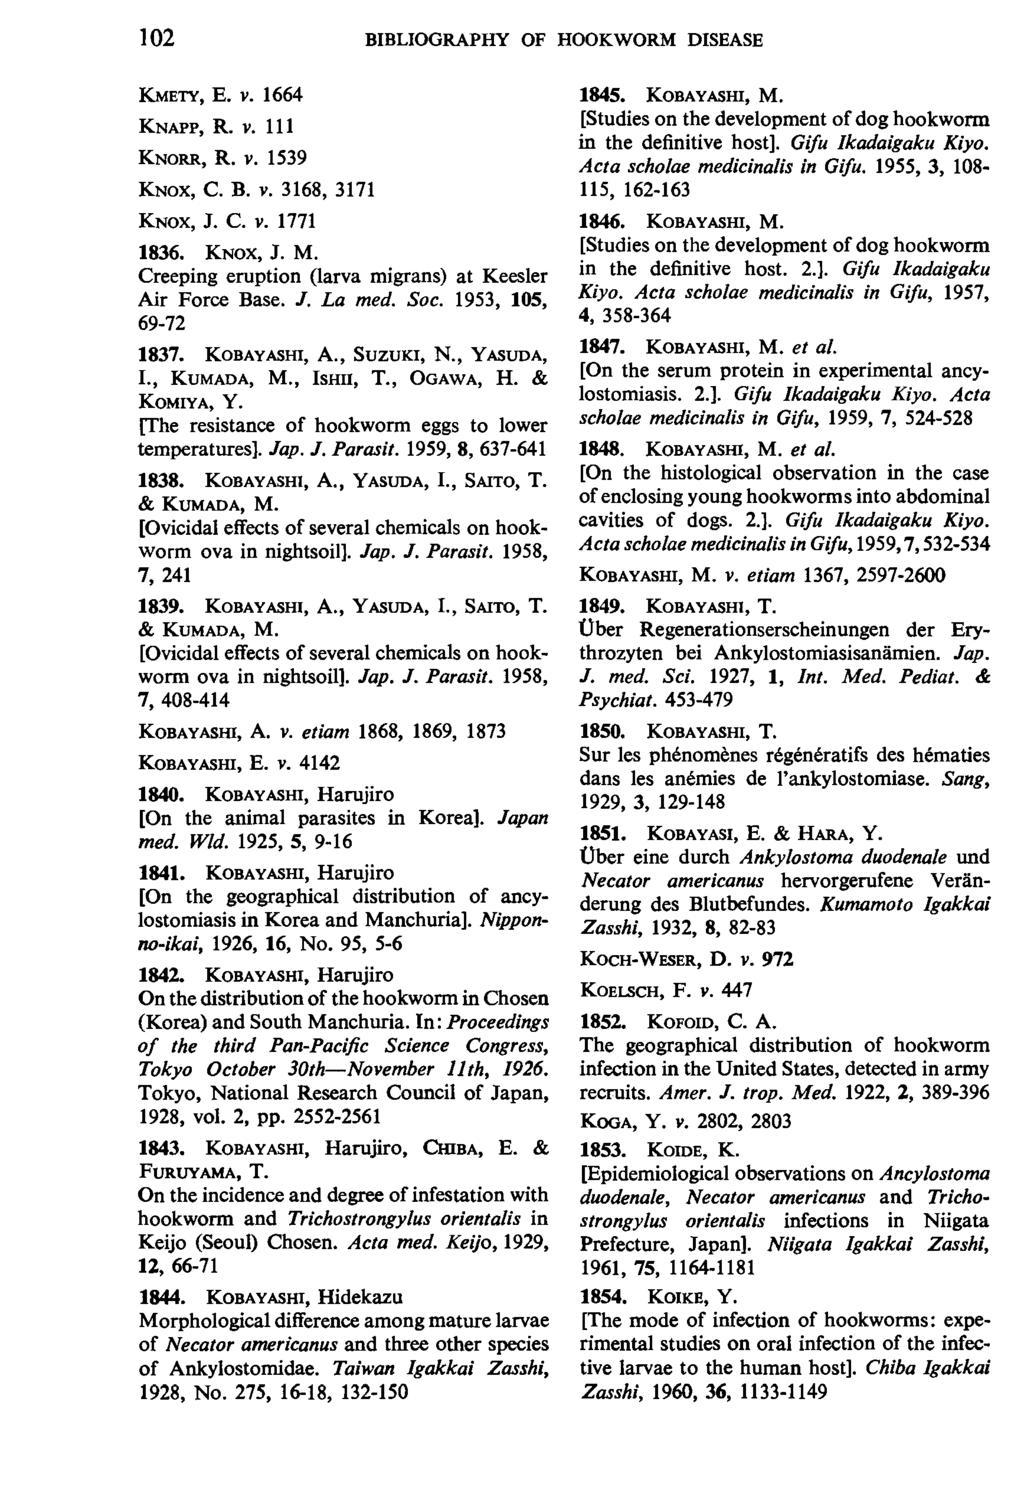 102 BIBLIOGRAPHY OF HOOKWORM DISEASE KMETY, E. V. 1664 KNAPP, R. V. 111 KNORR, R. v. 1539 KNOX, c. B. v. 3168, 3171 KNOX, J. C. V. 1771 1836. KNOX, J. M.